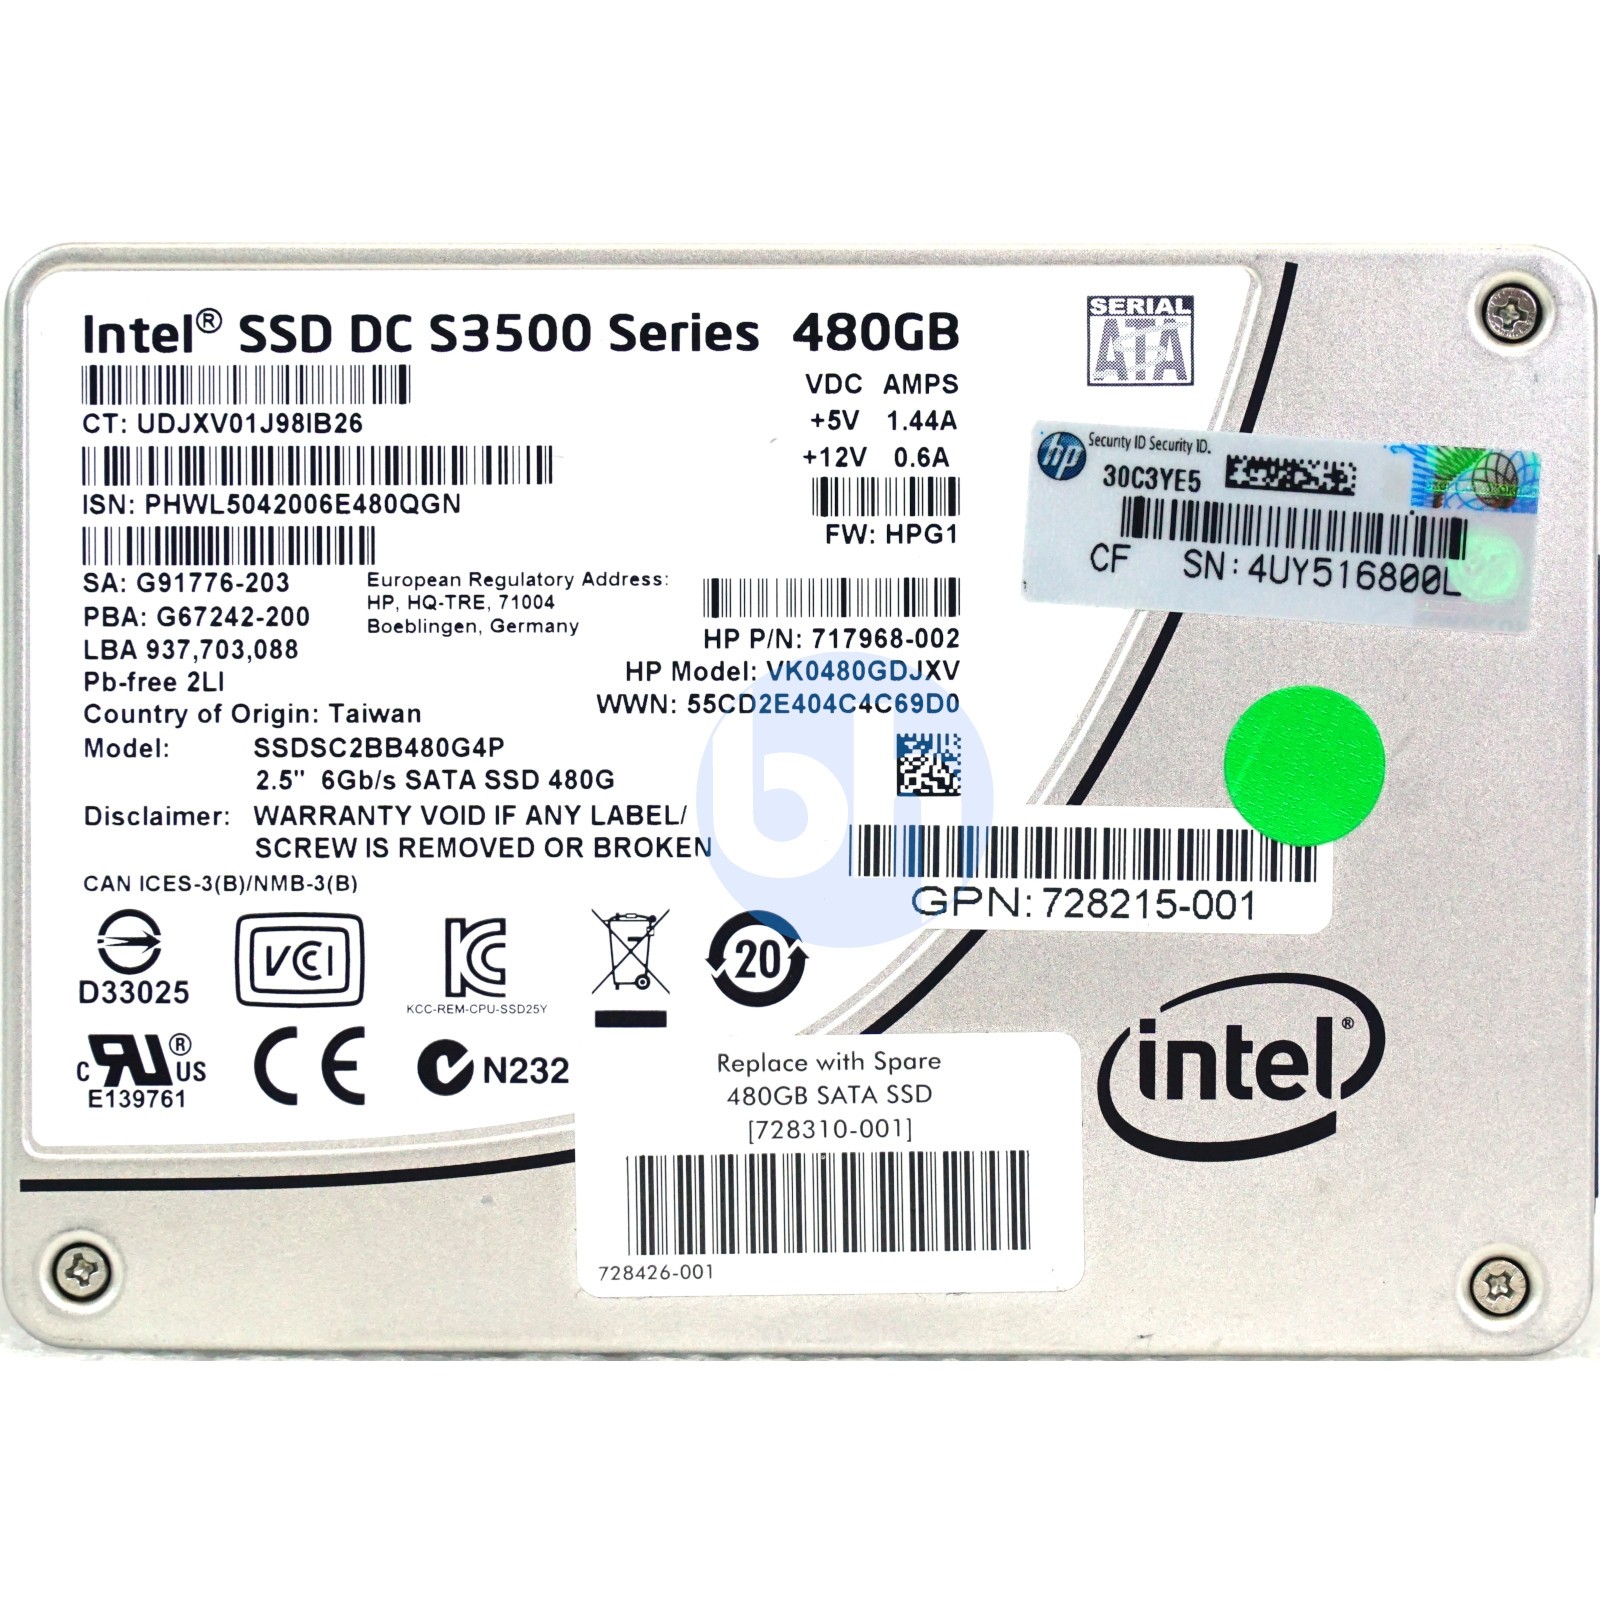 HP (717968-002) 480GB SATA III (SFF) 6Gb/s SSD